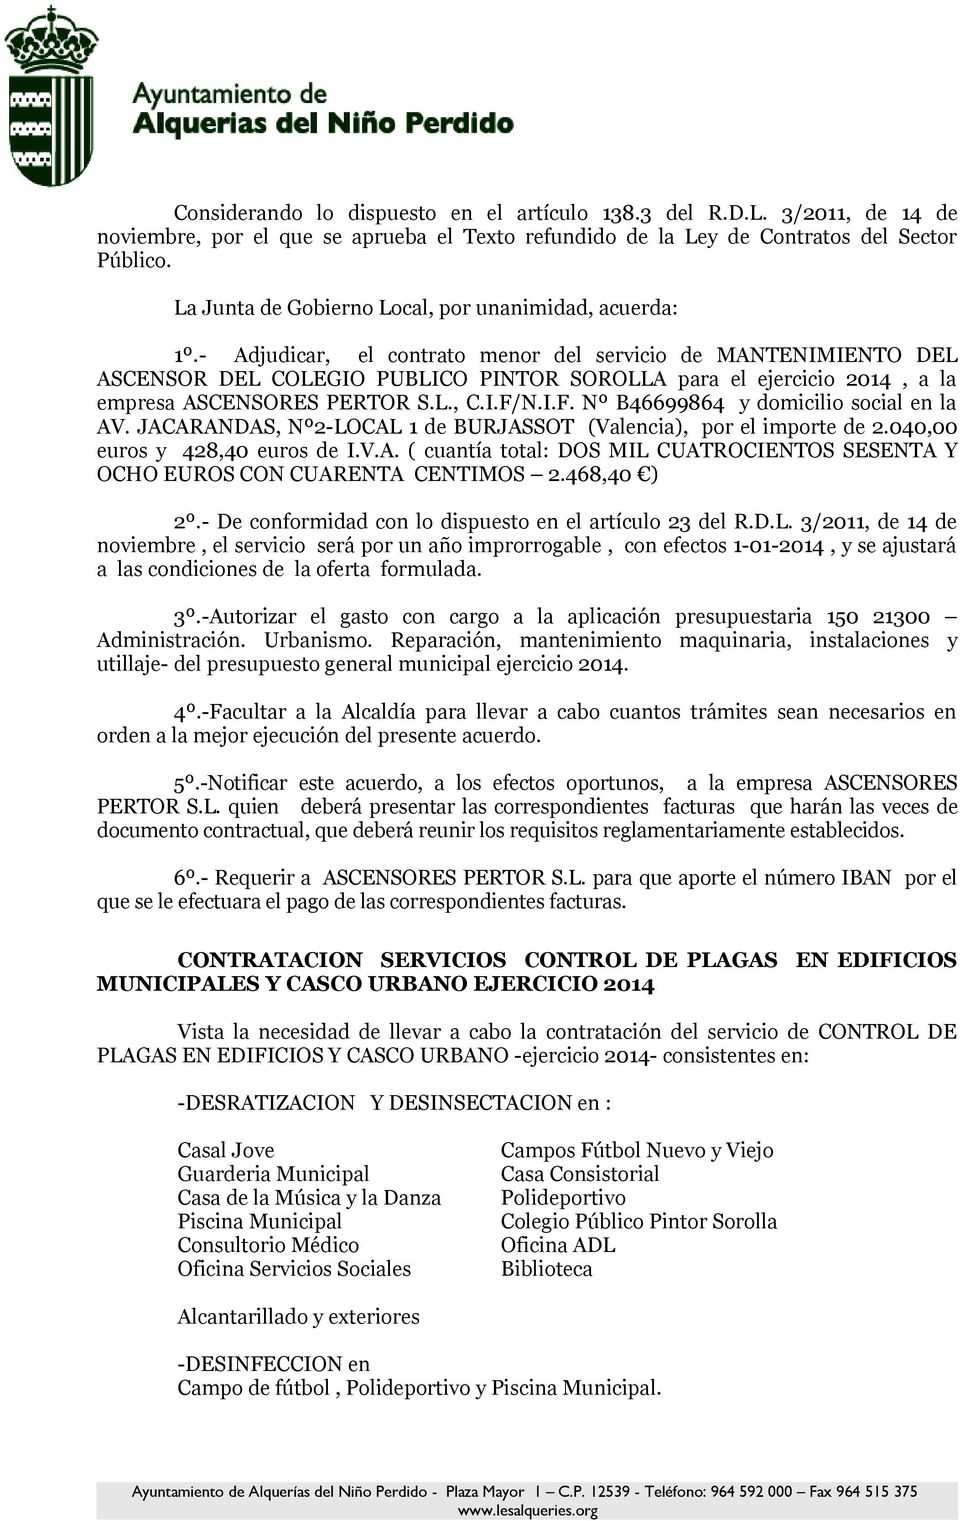 - Adjudicar, el contrato menor del servicio de MANTENIMIENTO DEL ASCENSOR DEL COLEGIO PUBLICO PINTOR SOROLLA para el ejercicio 2014, a la empresa ASCENSORES PERTOR S.L., C.I.F/